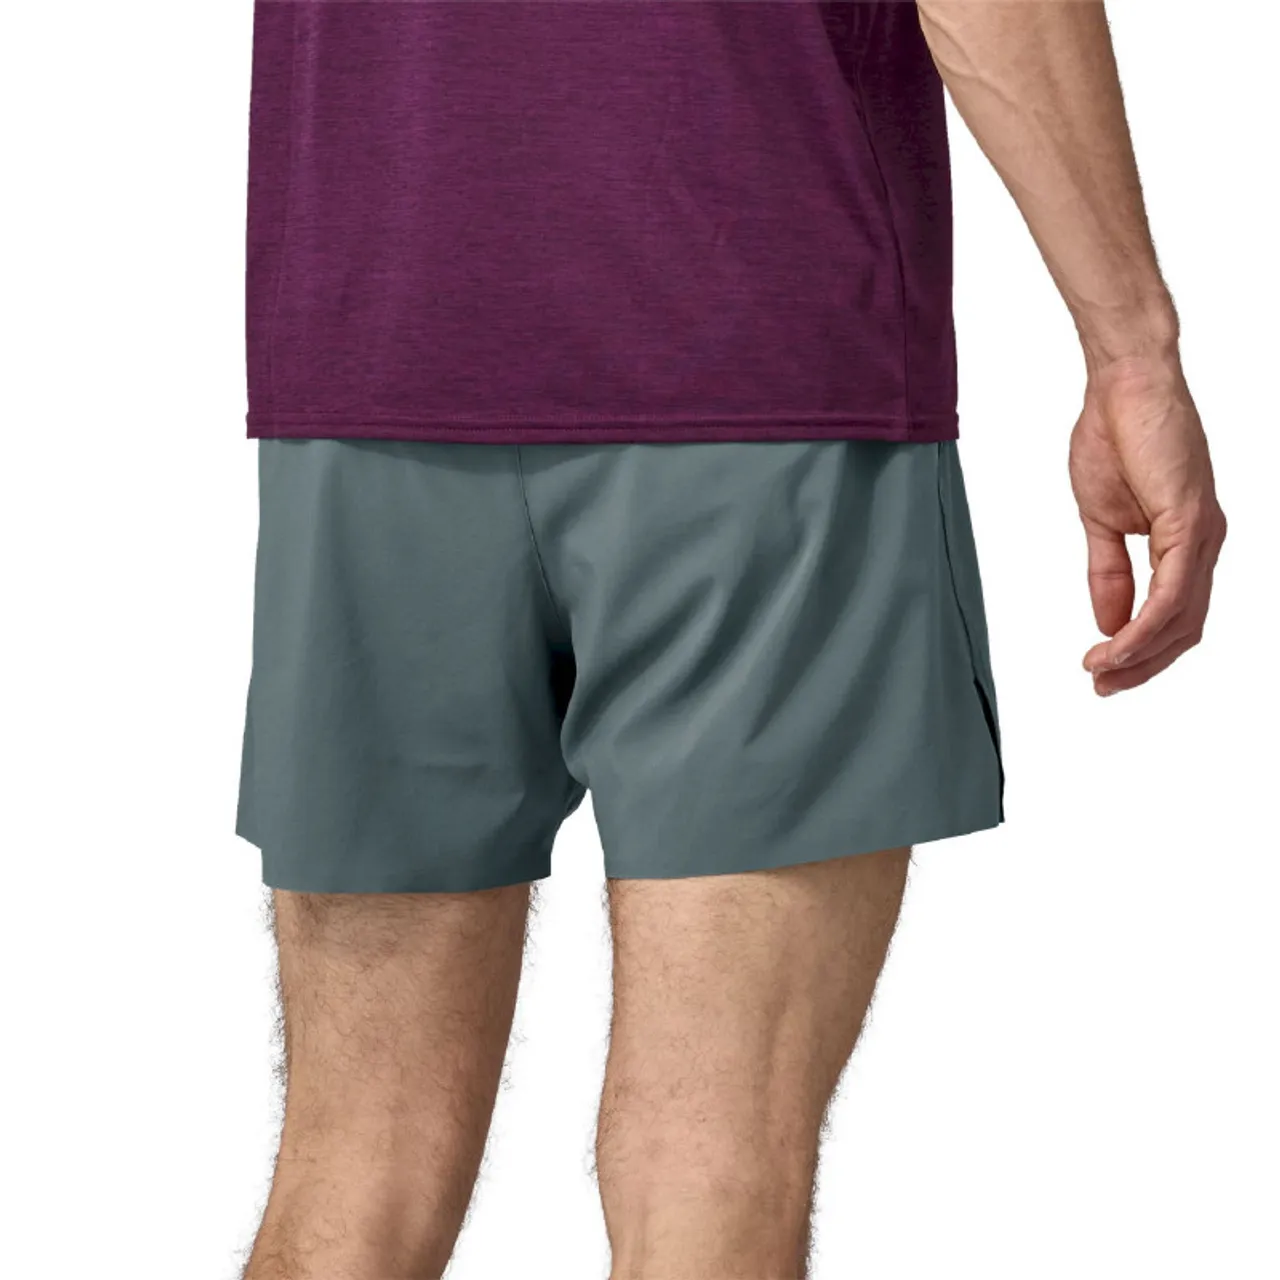 Patagonia M's Strider Pro Shorts - 5" - Trailrunning Shorts - Herren Nouveau Green XL - Inseam 5"